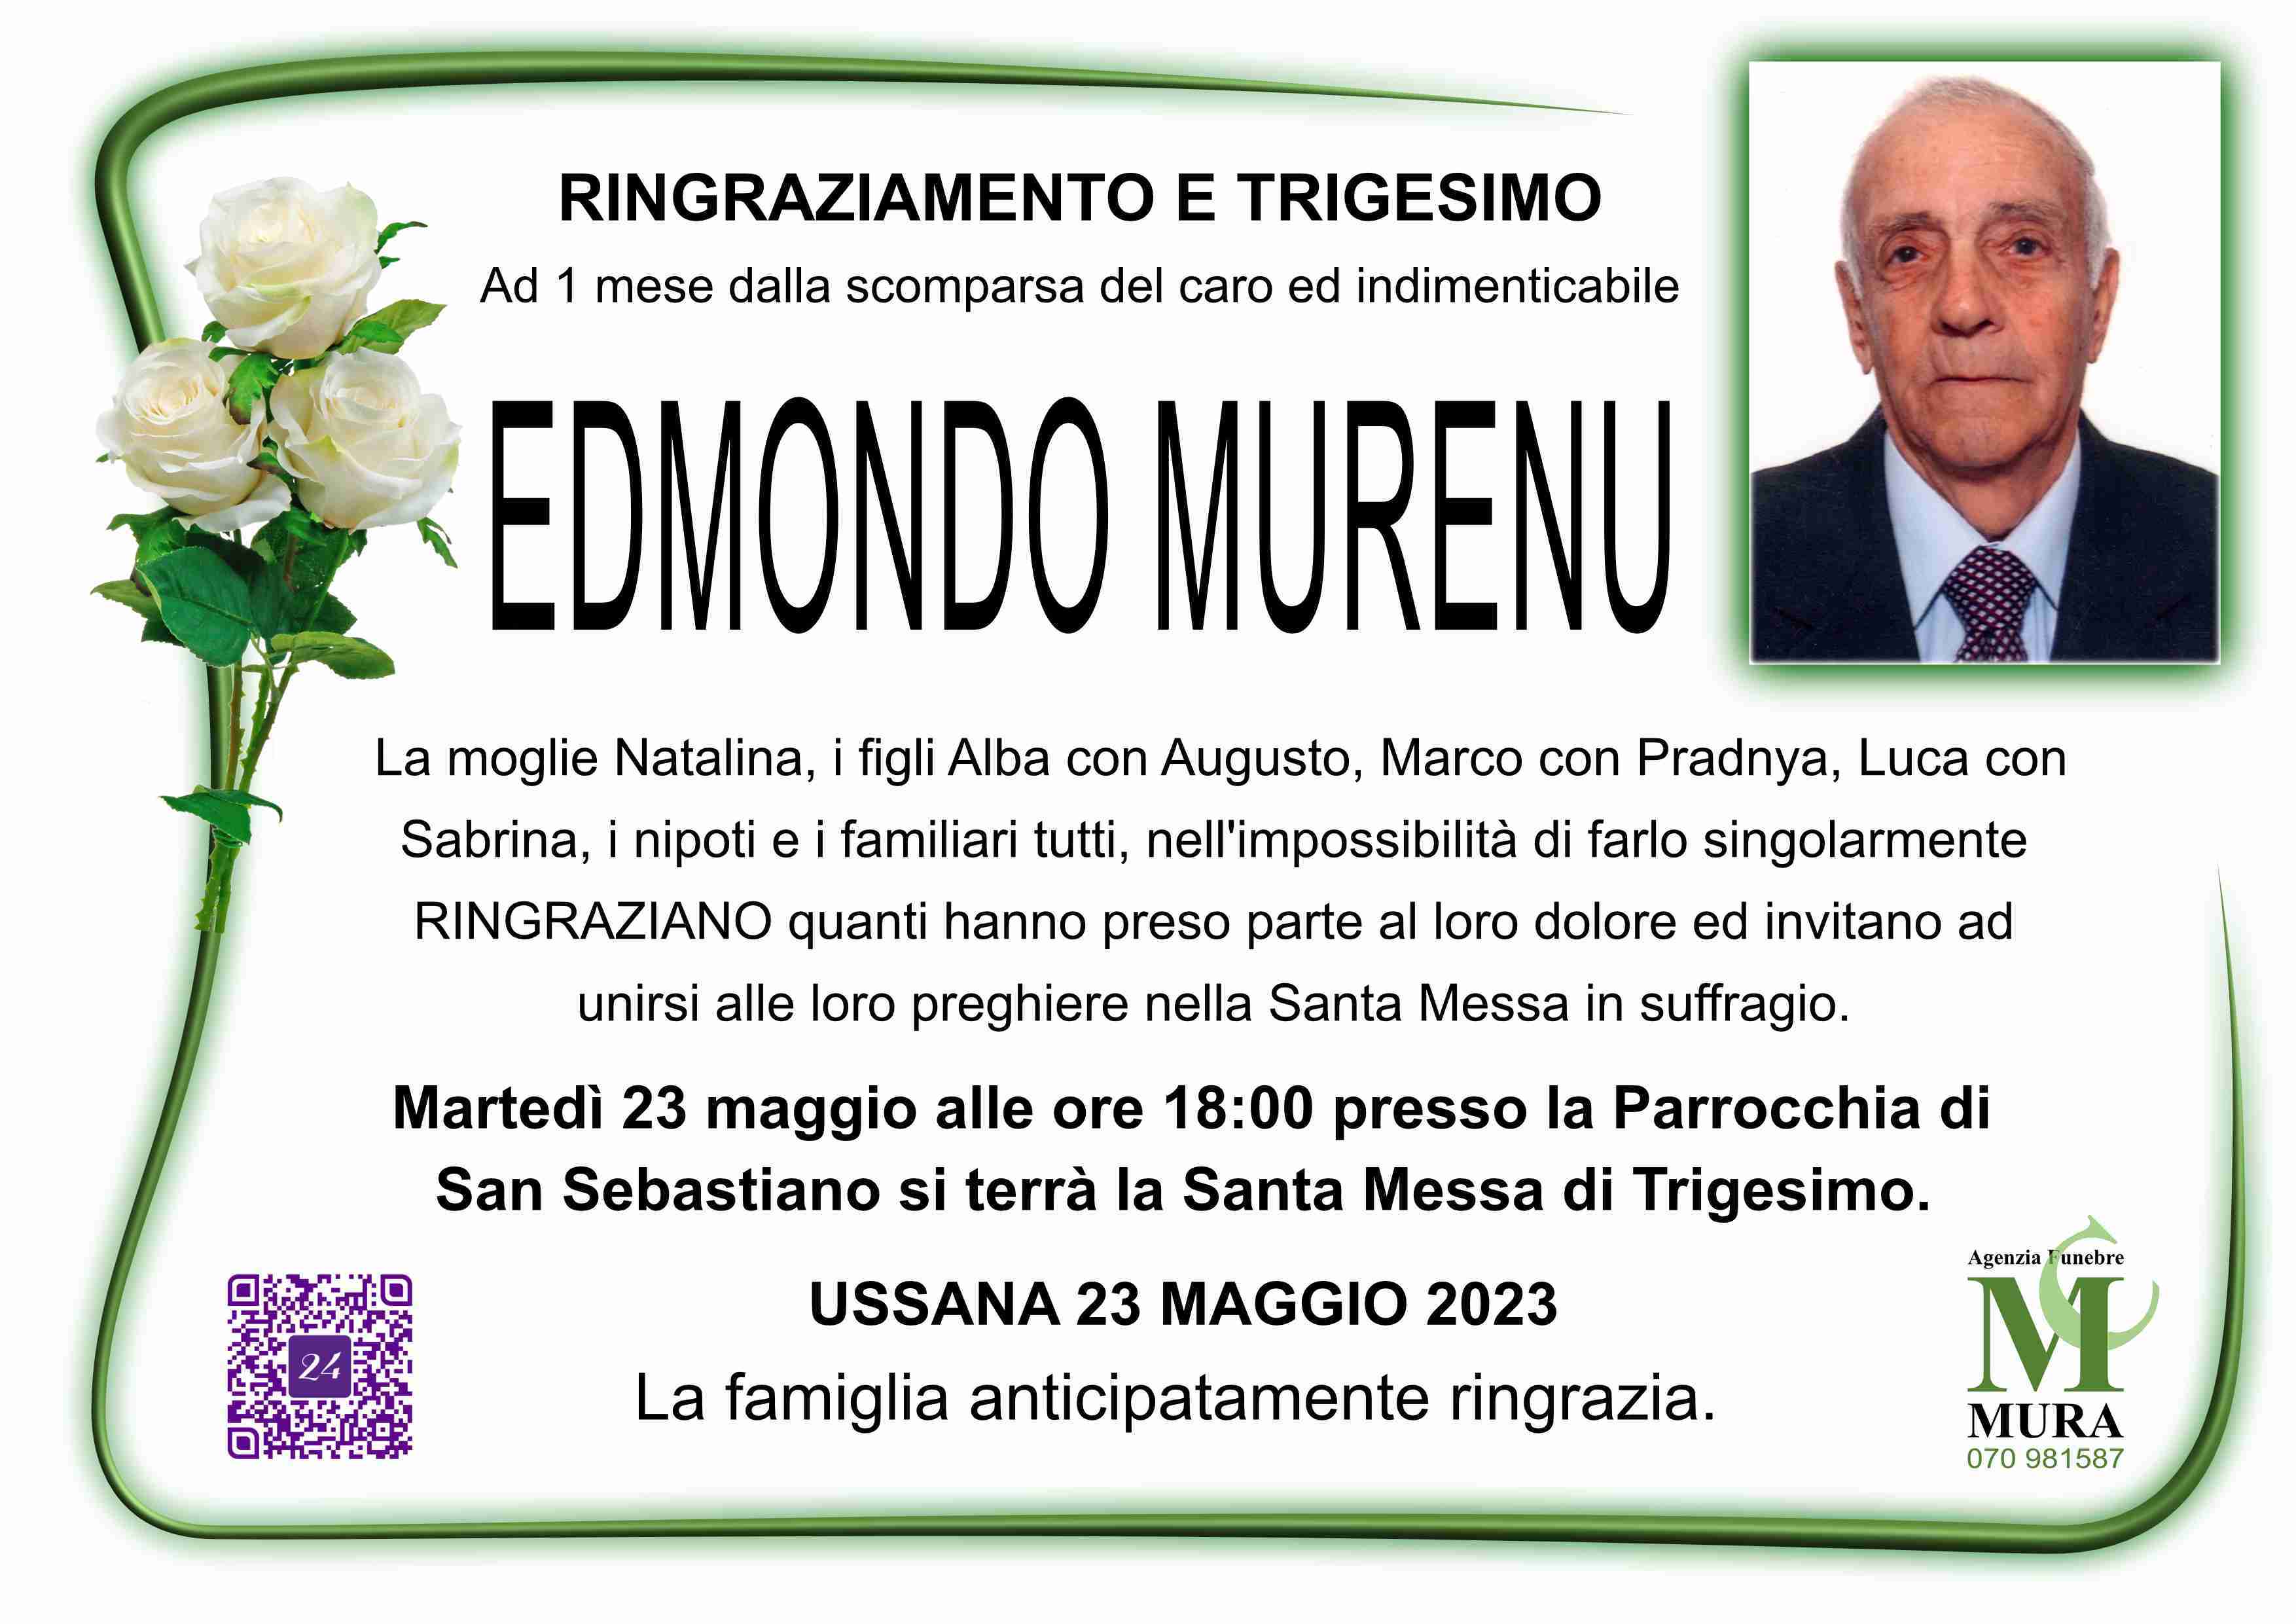 Edmondo Murenu